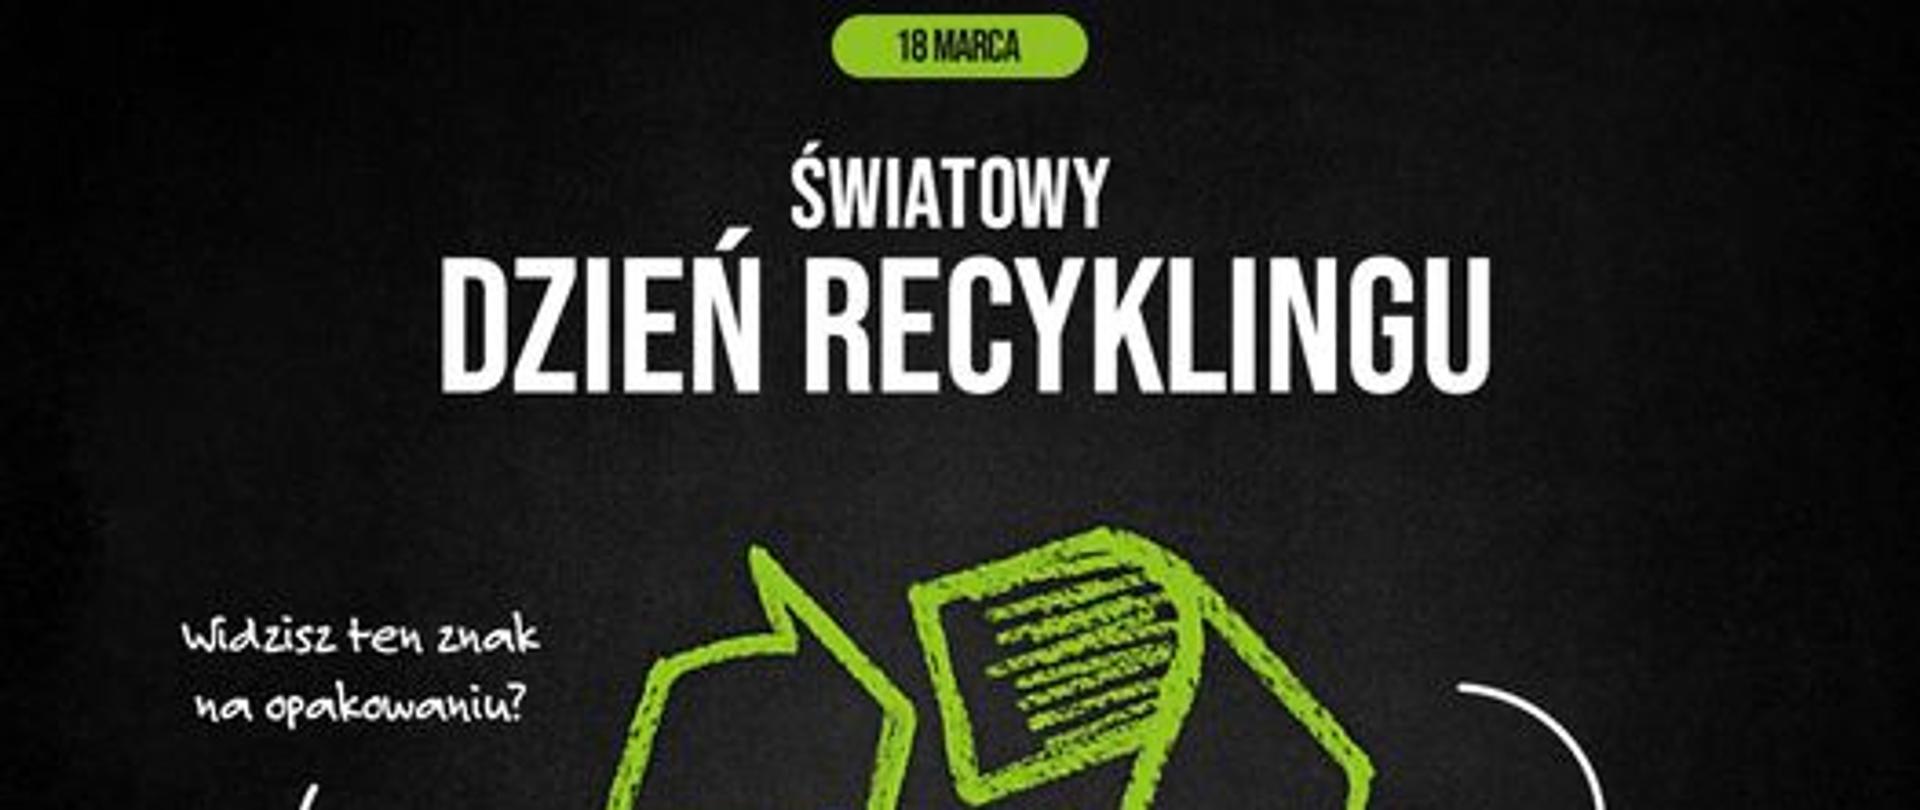 18 marca Światowy Dzień Recyklingu